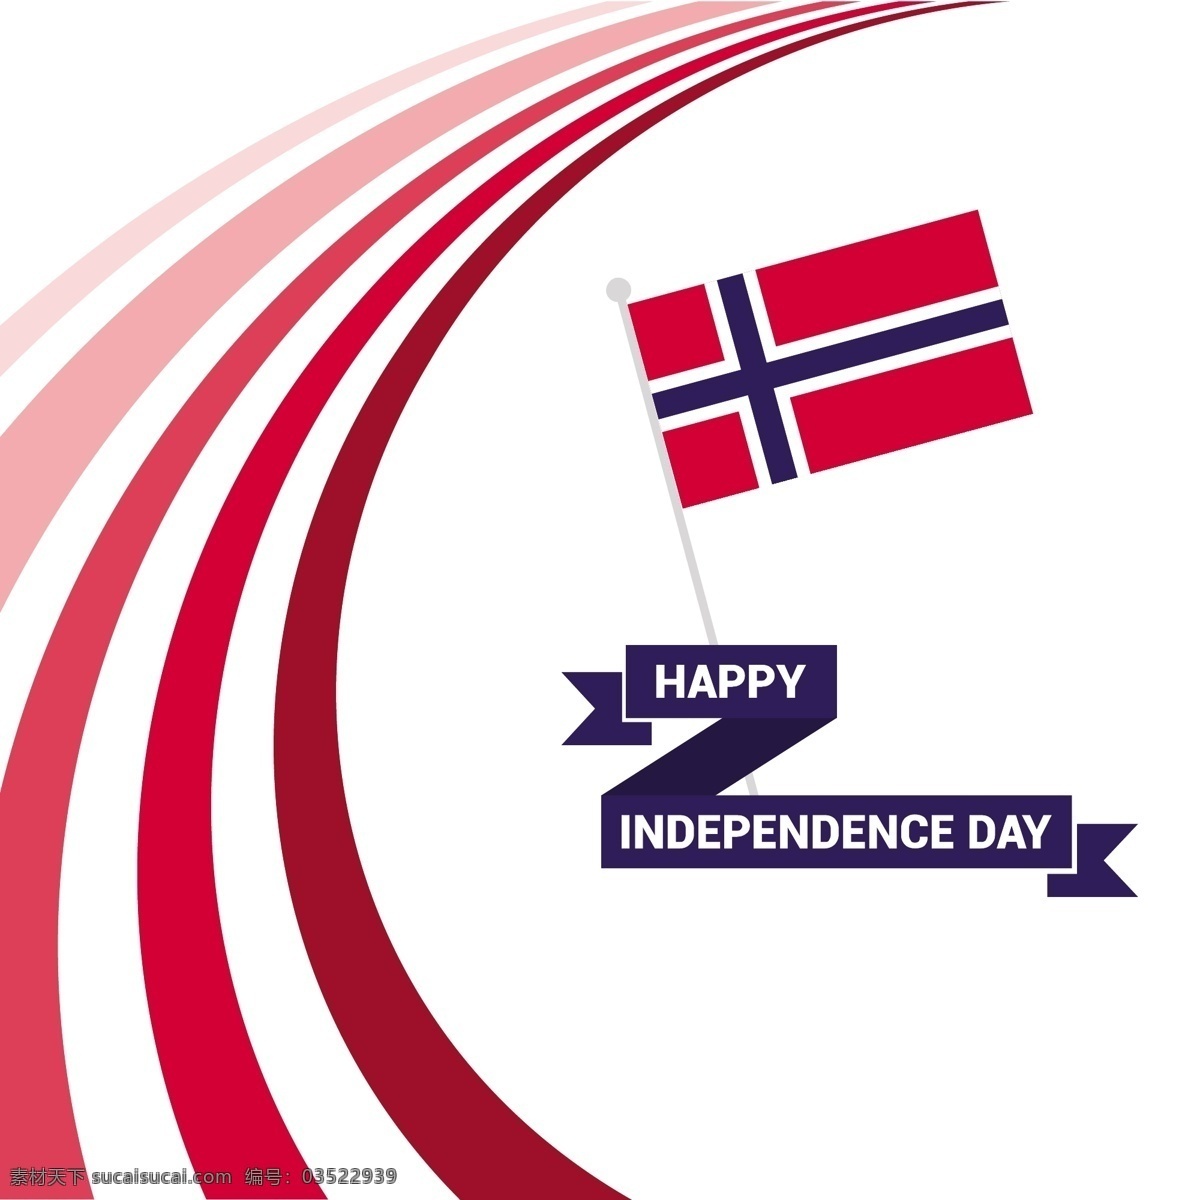 挪威 独立日 旗 色带 标志 有趣 会徽 欧洲 自由 庆祝 幸福 一天 团结 飞翔 喜悦 快乐 彭南特 独立的王国 挪威共和国 独立的民族 白色